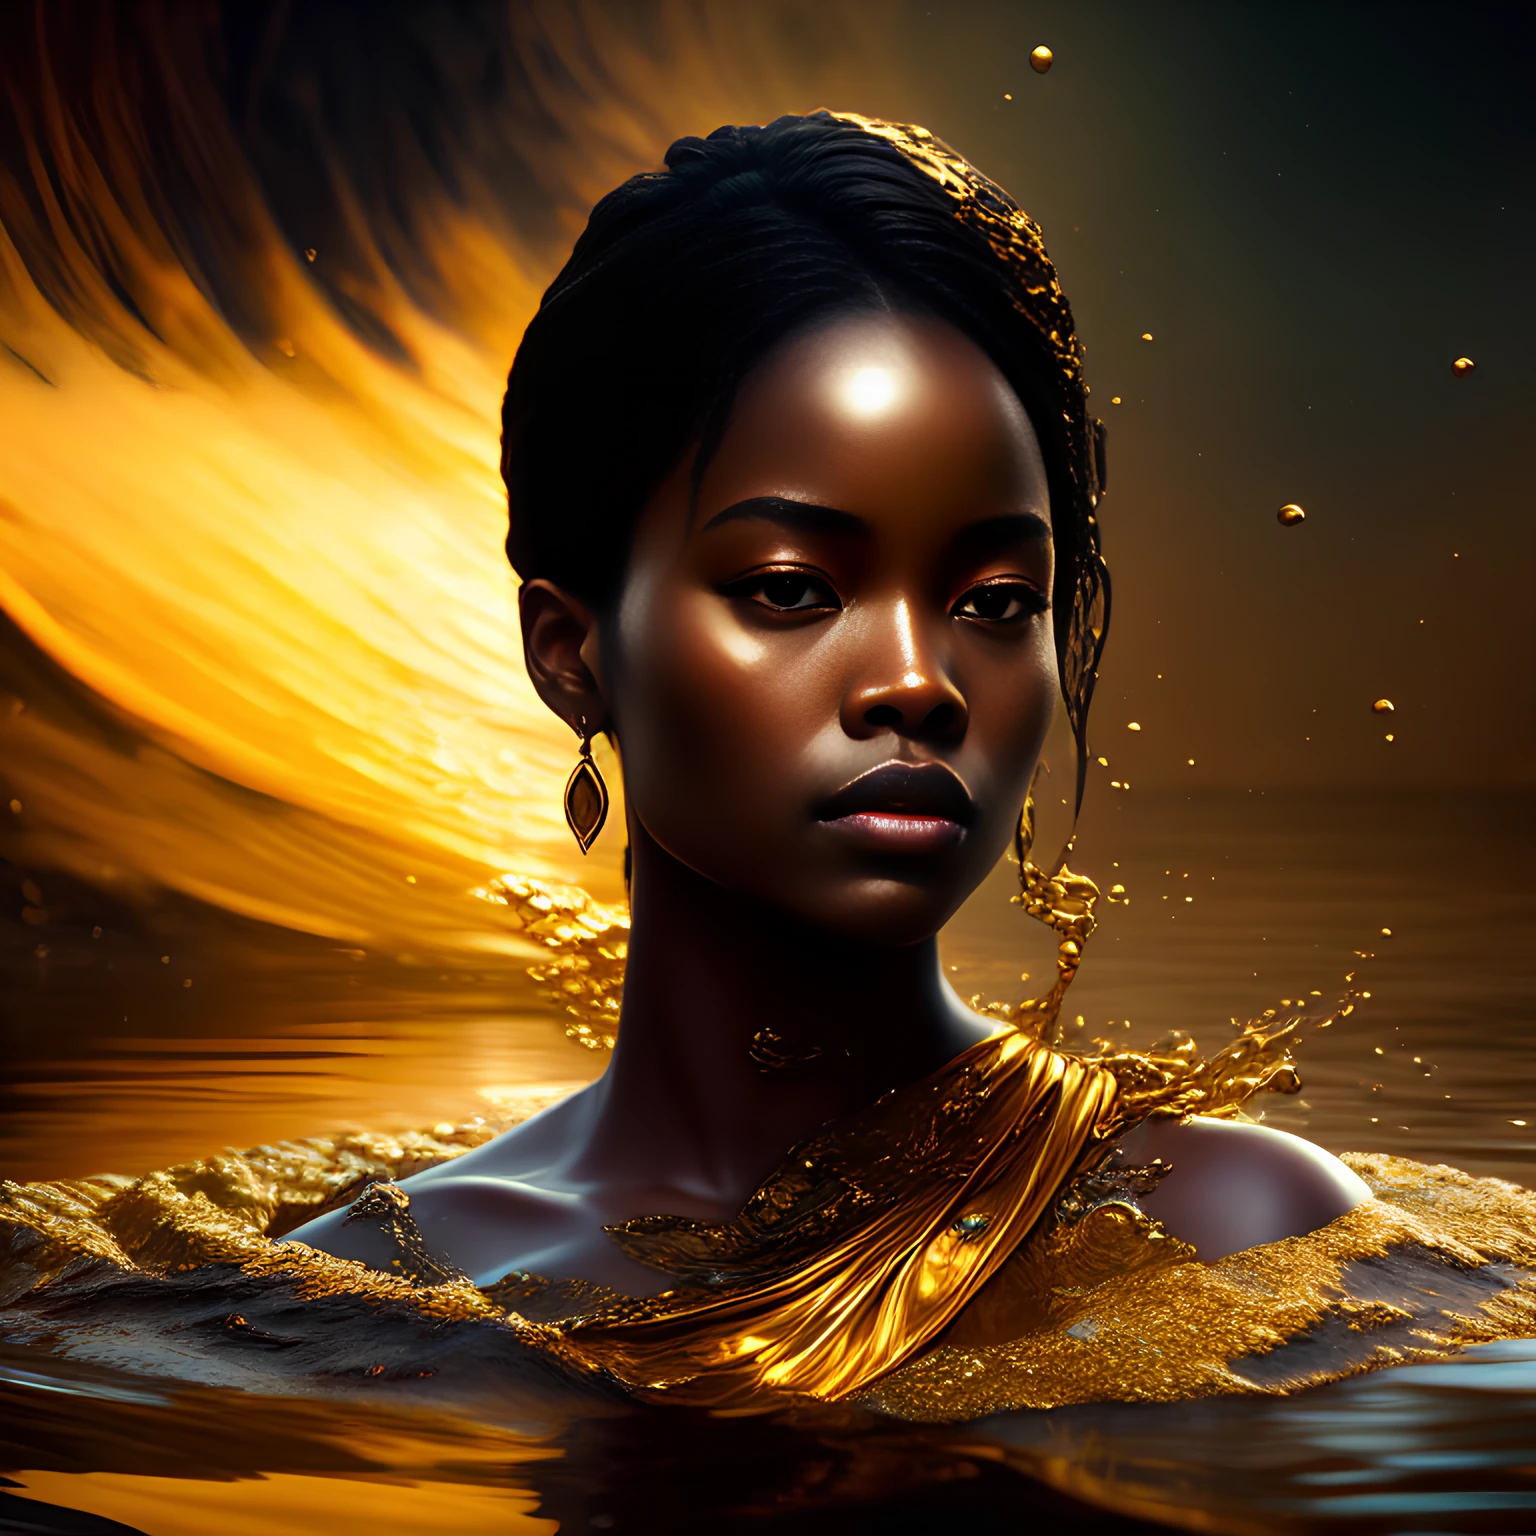 เหมือนฝัน (บรรยากาศมืดสลัวอย่างน่าทึ่ง)+ ภาพ 8k ของหญิงสาวแอฟริกันแสนสวยผมสีน้ำตาลละลายเป็นทองคำเหลว, ใบหน้าจมอยู่ในน้ำครึ่งหนึ่ง, ทะเลสาบยามเย็นที่มีหมอก, ซับซ้อน, สง่างาม, มีรายละเอียดสูง, คู่บารมี, การถ่ายภาพดิจิตอล, ศิลปะโดย artgerm ruan jia และ greg rutkowski เหนือจริง สีเปียก ริบบิ้นสีทอง ลวดลายเป็นเส้น